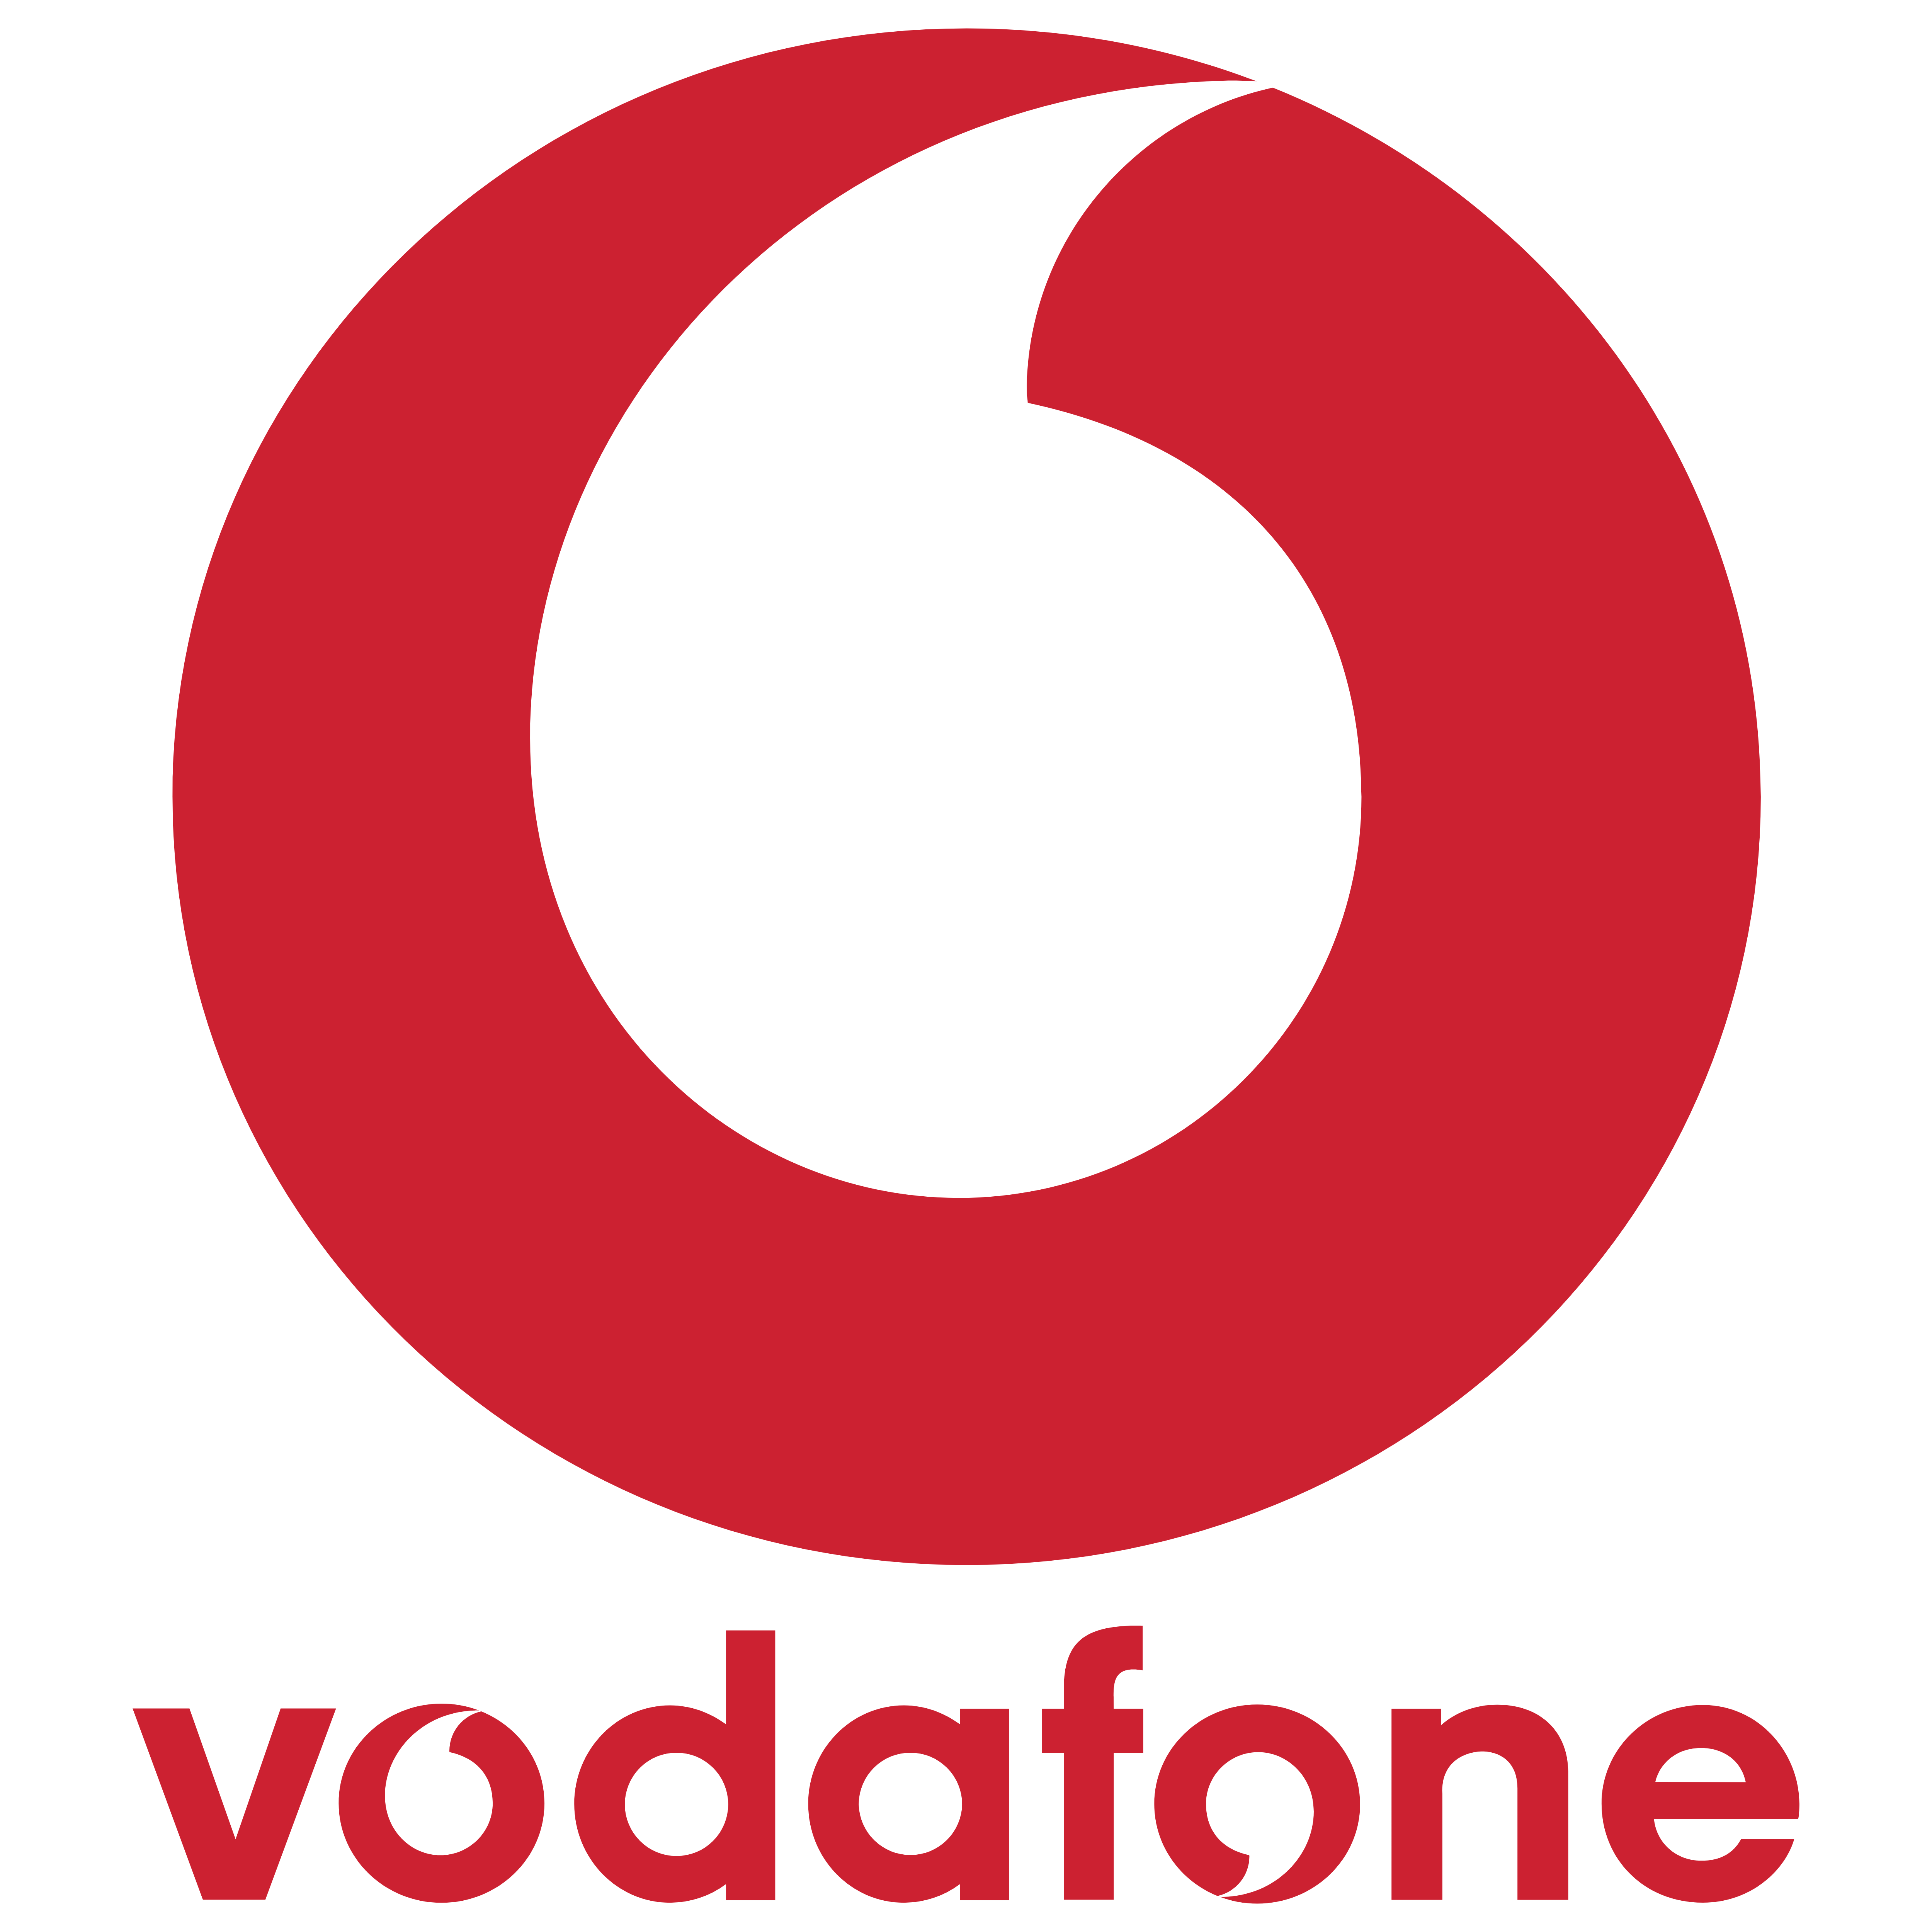 Transparent Background Vodafo